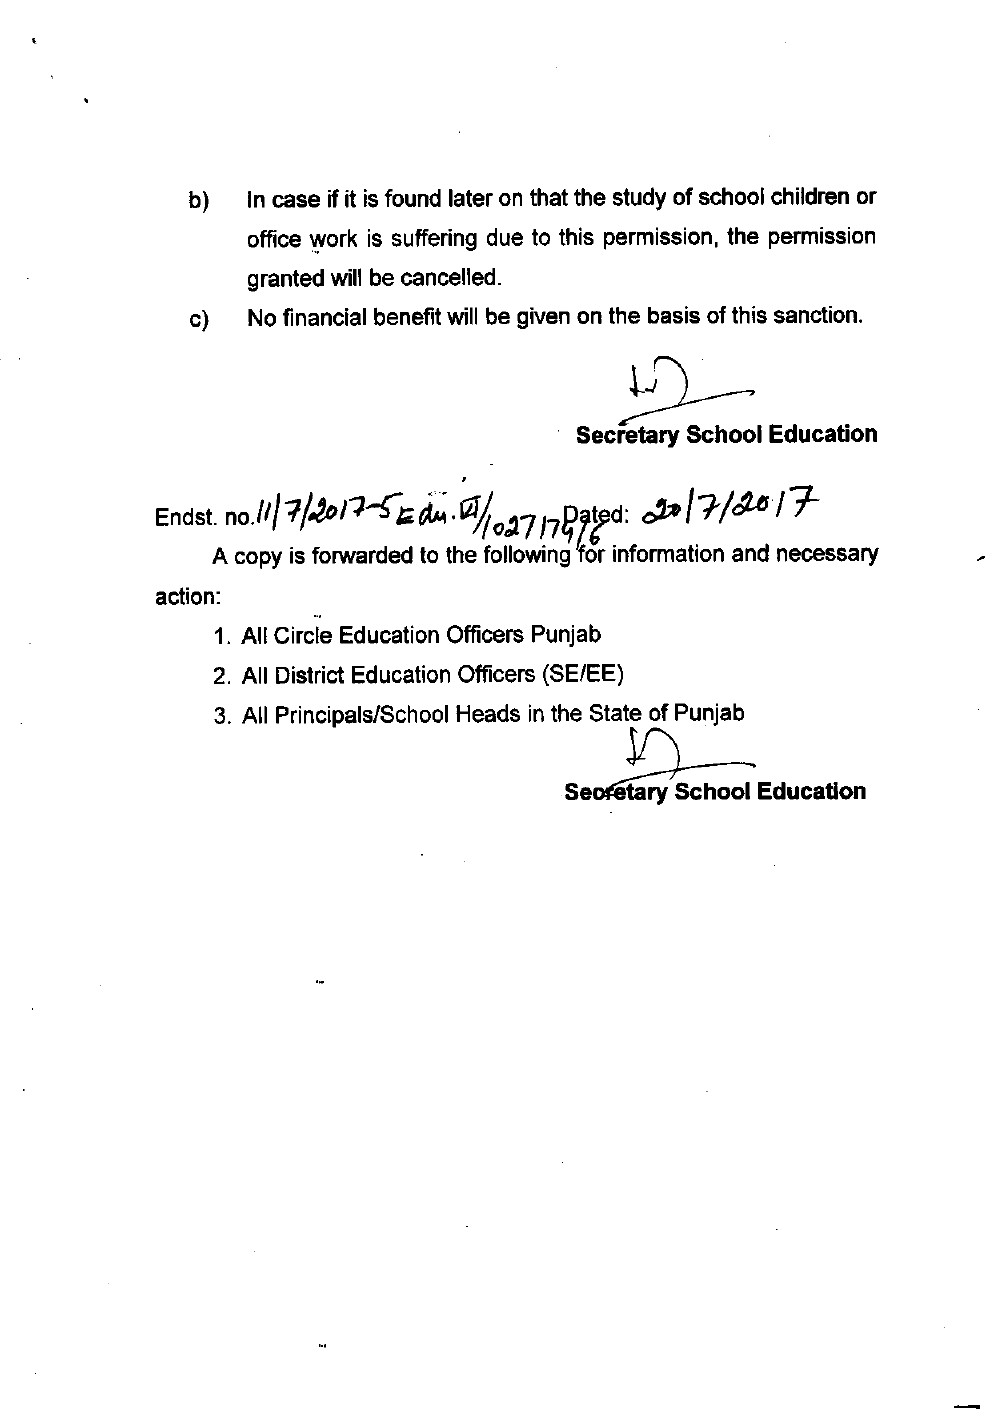 LETTER OF PERMISSION FOR HIGHER EDUCATION IN EDU. DEPTT. - News - 19